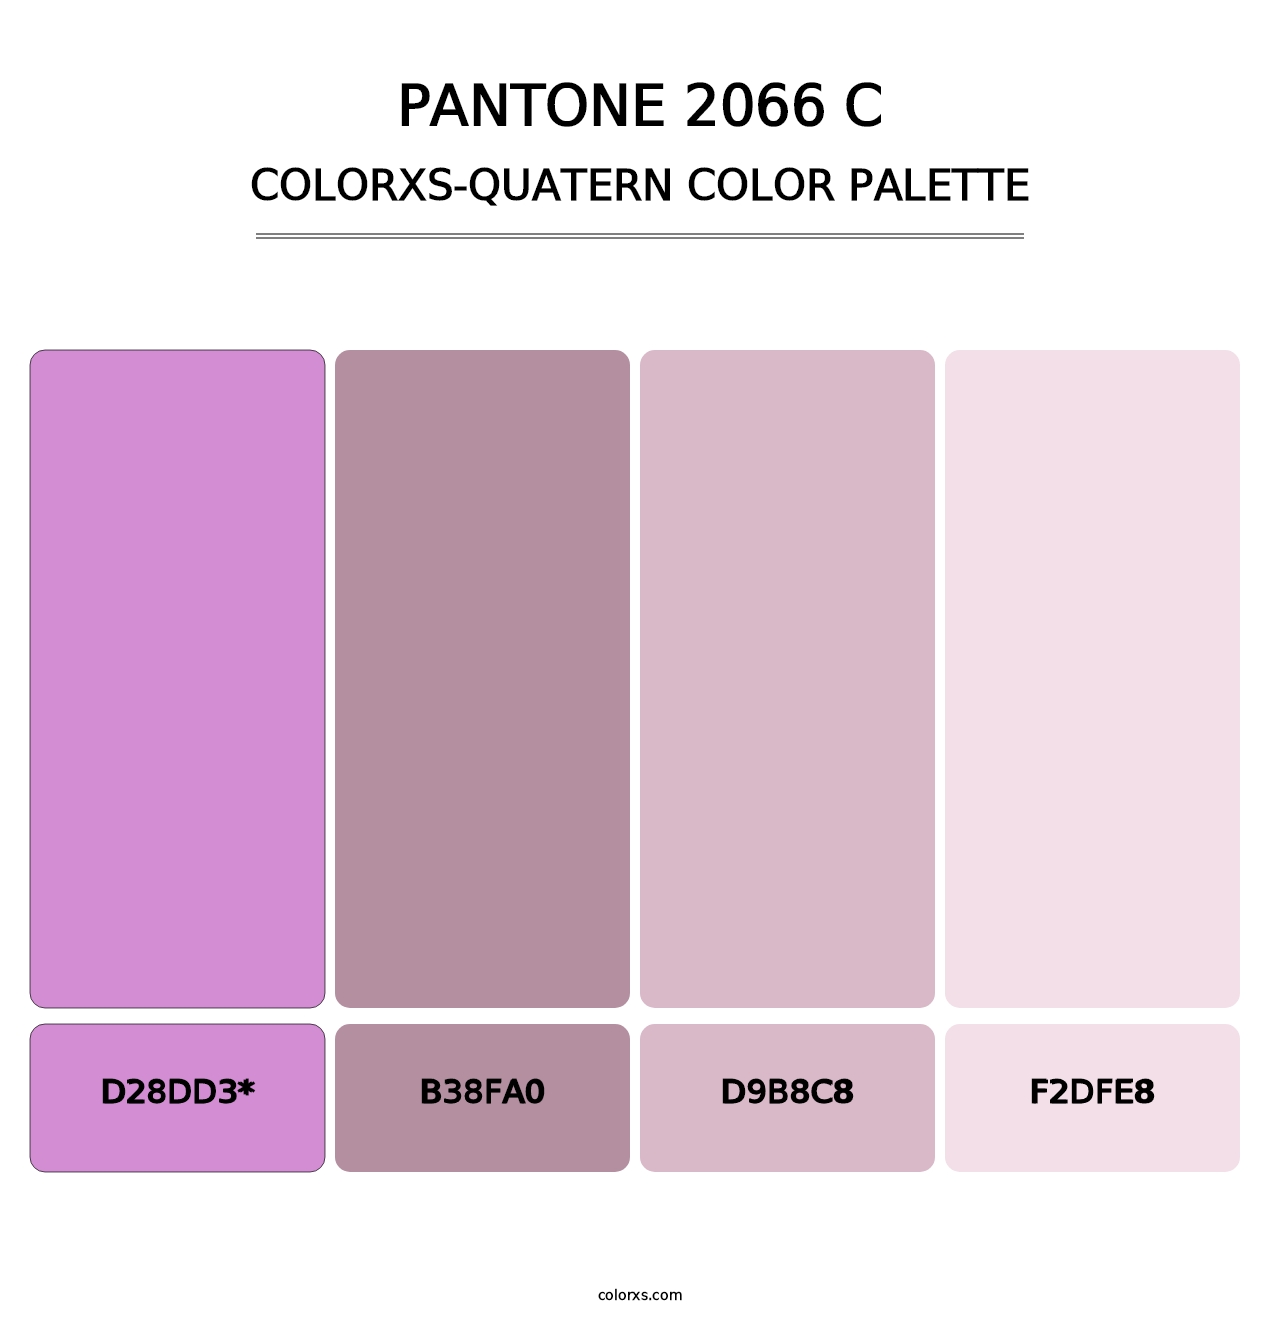 PANTONE 2066 C - Colorxs Quatern Palette